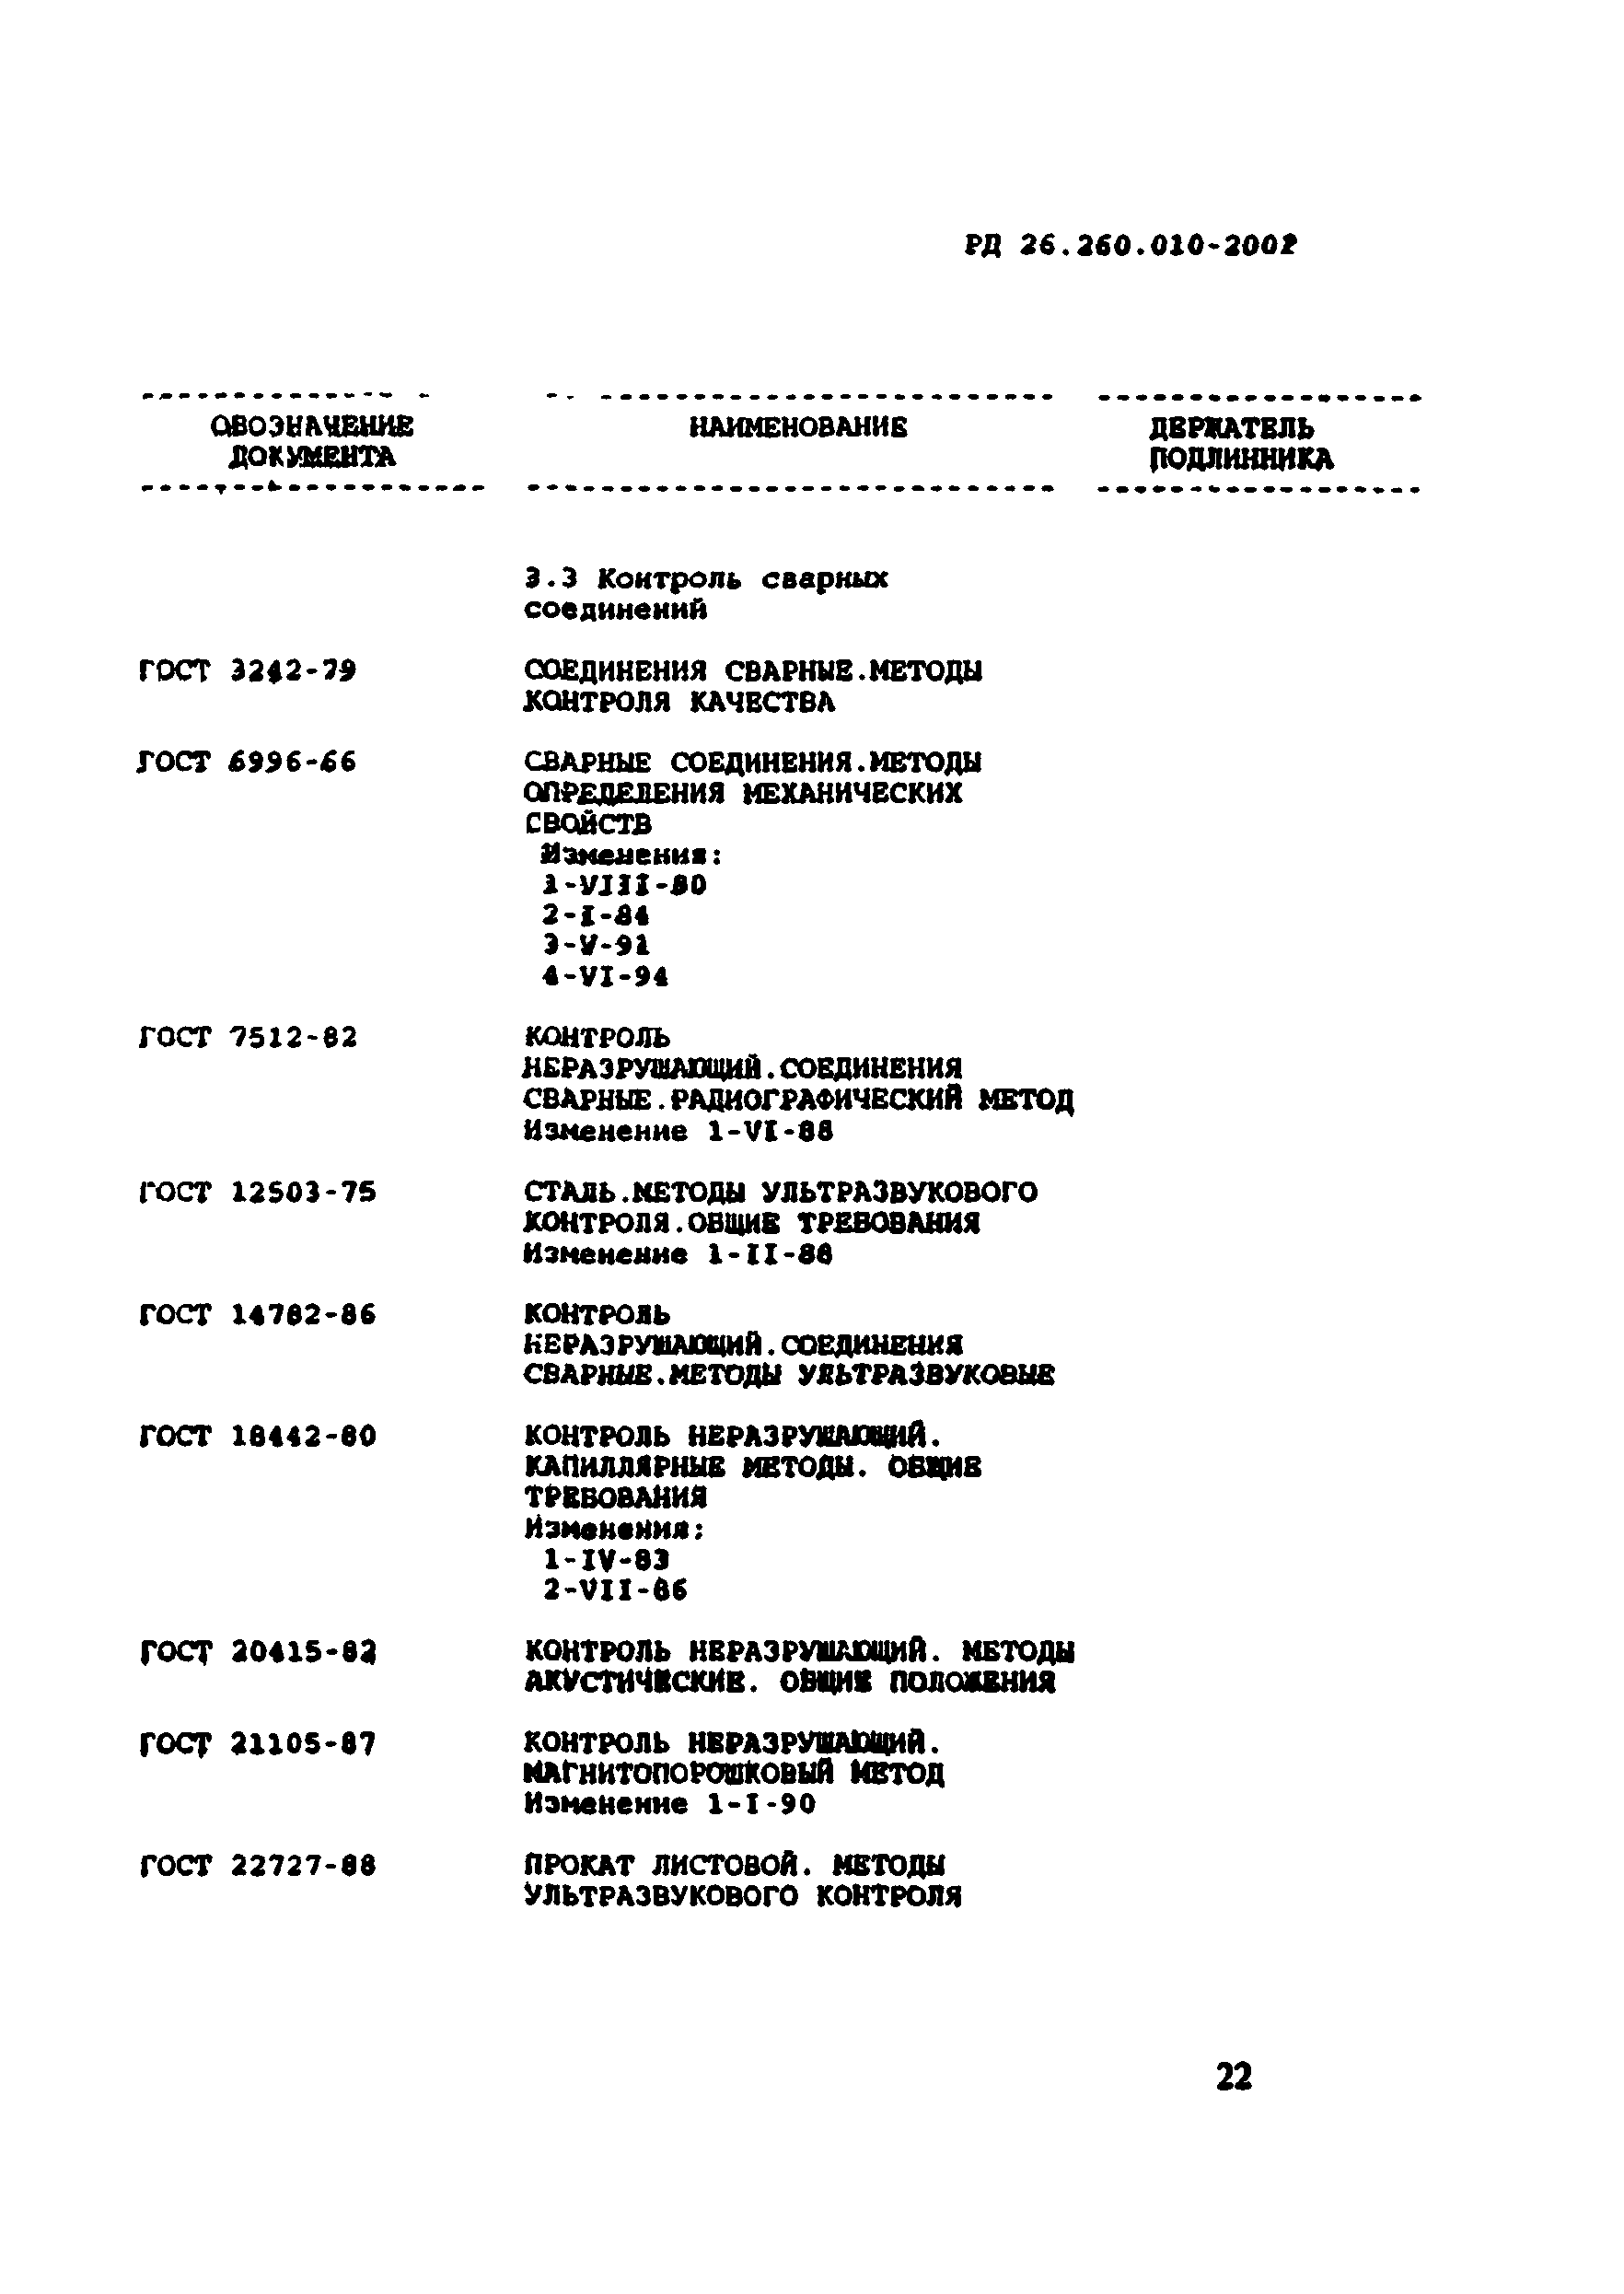 РД 26.260.010-2002